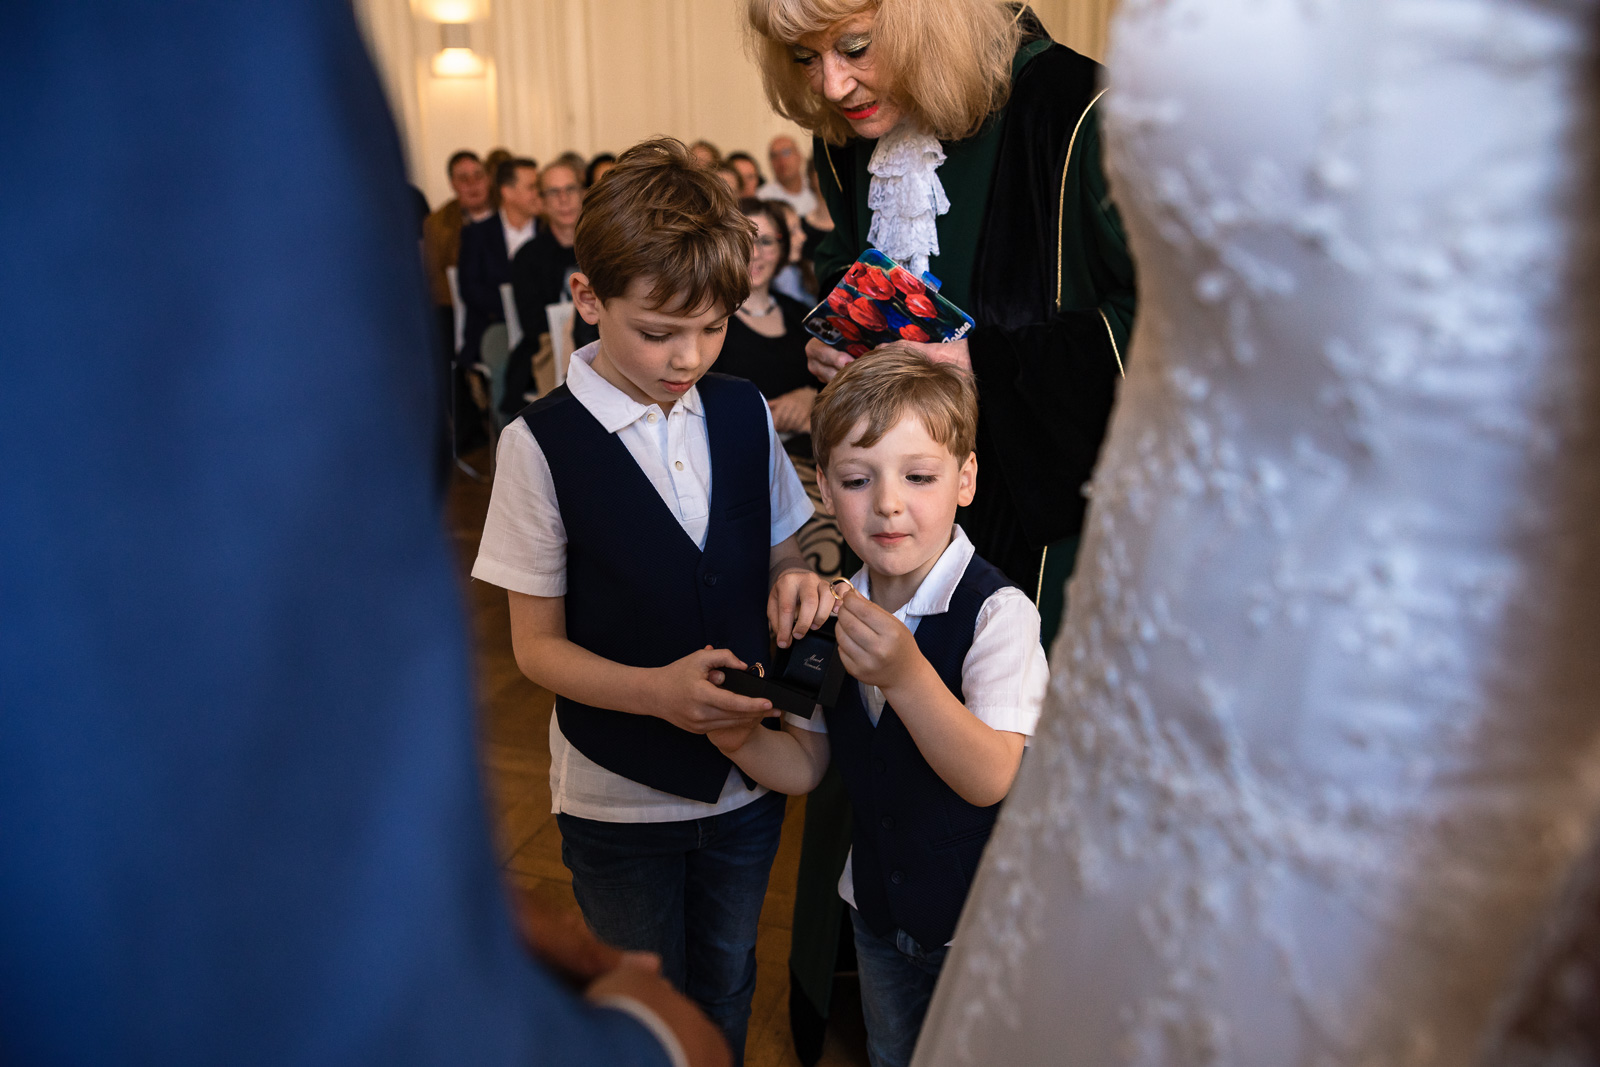 kinderen bruidspaar komen ringen brengen Trouwfotograaf Spaansche Hof Den Haag